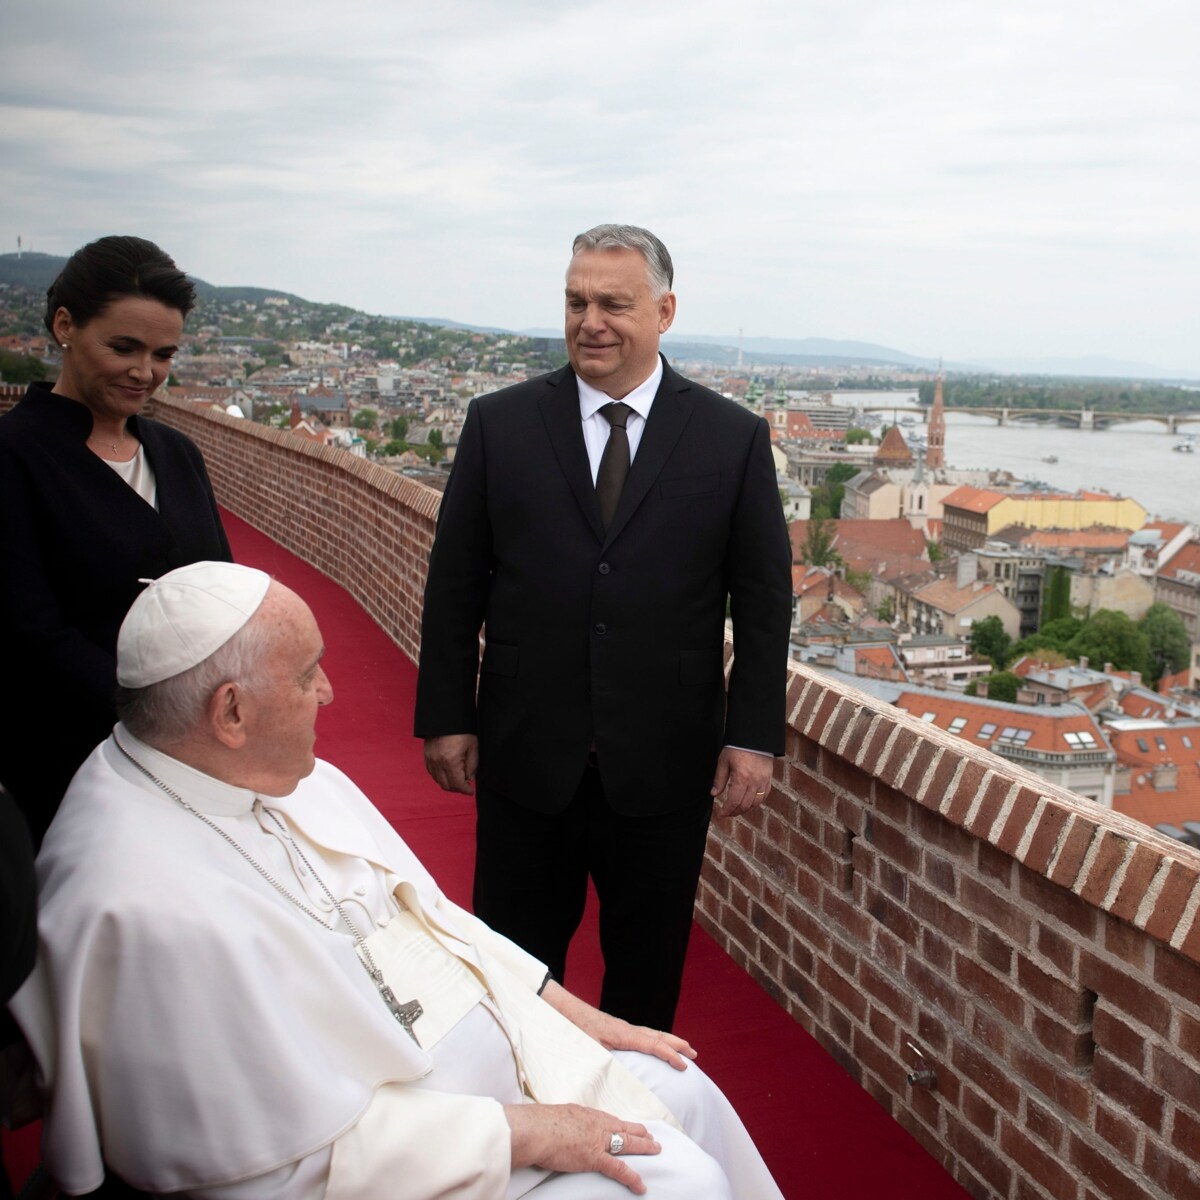 El Papa Francisco y Viktor Orbán, la extraña pareja con visiones del mundo contrapuestas